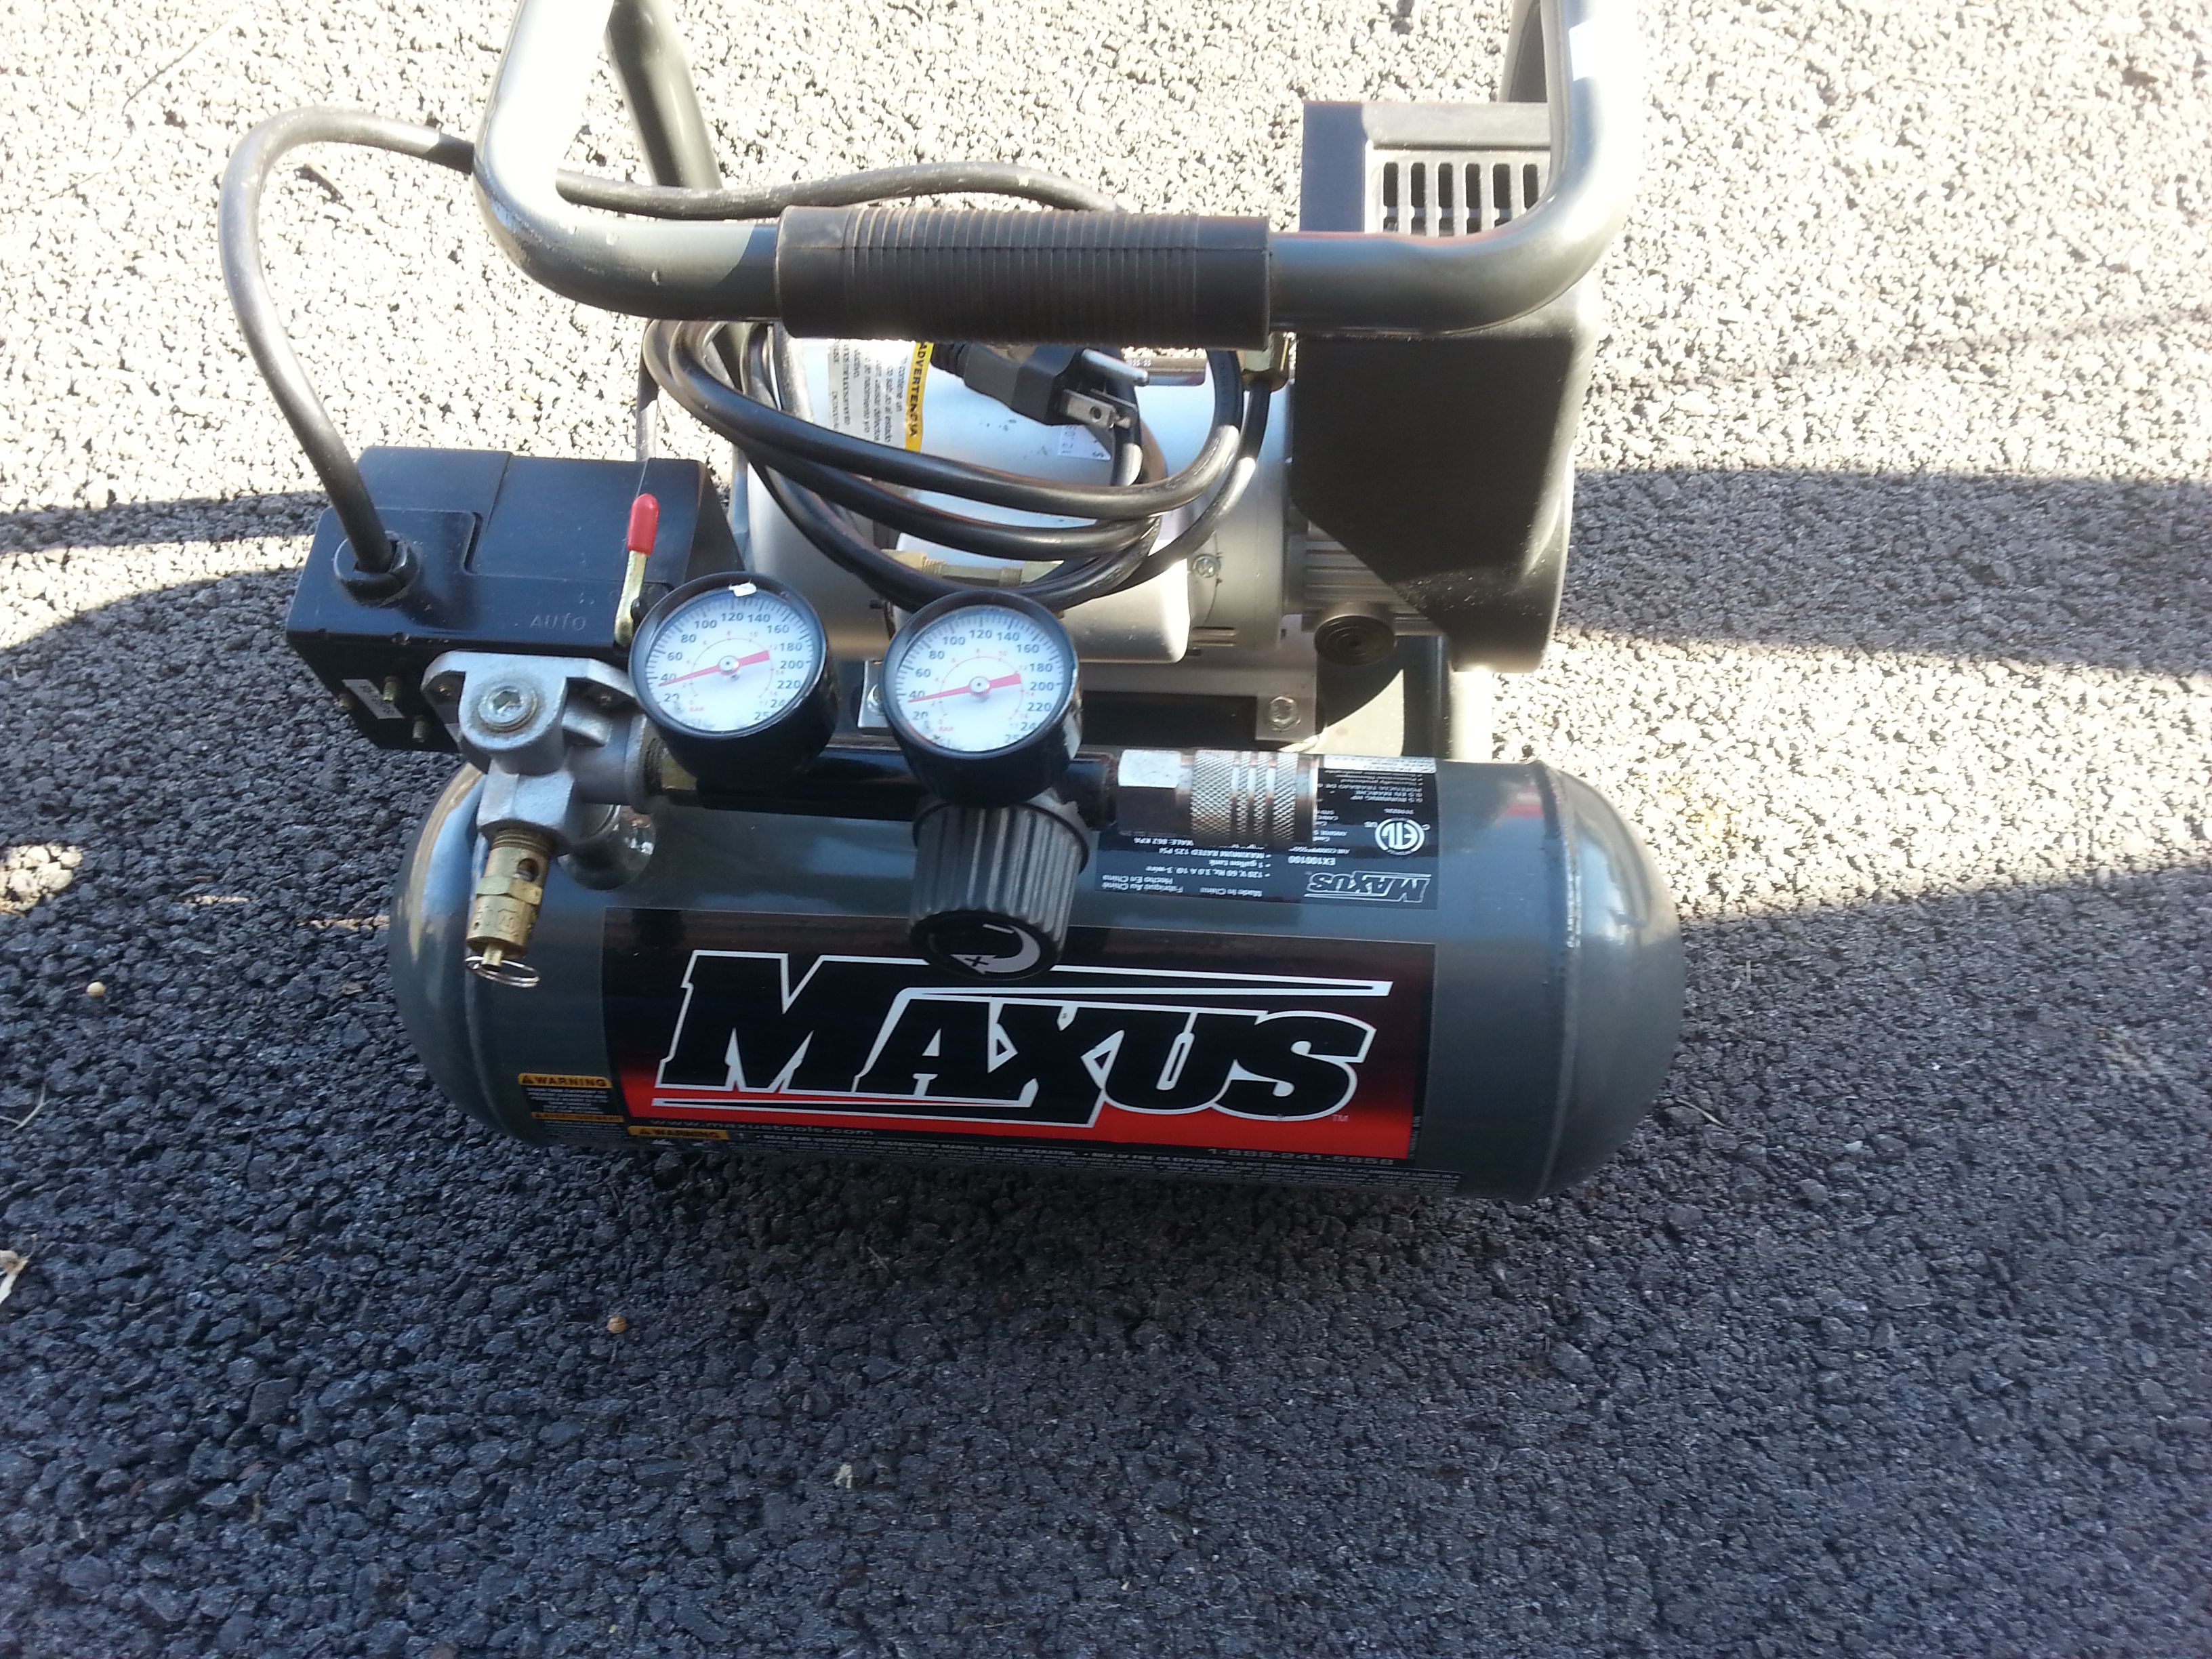 Maxus air compressor 125 psi